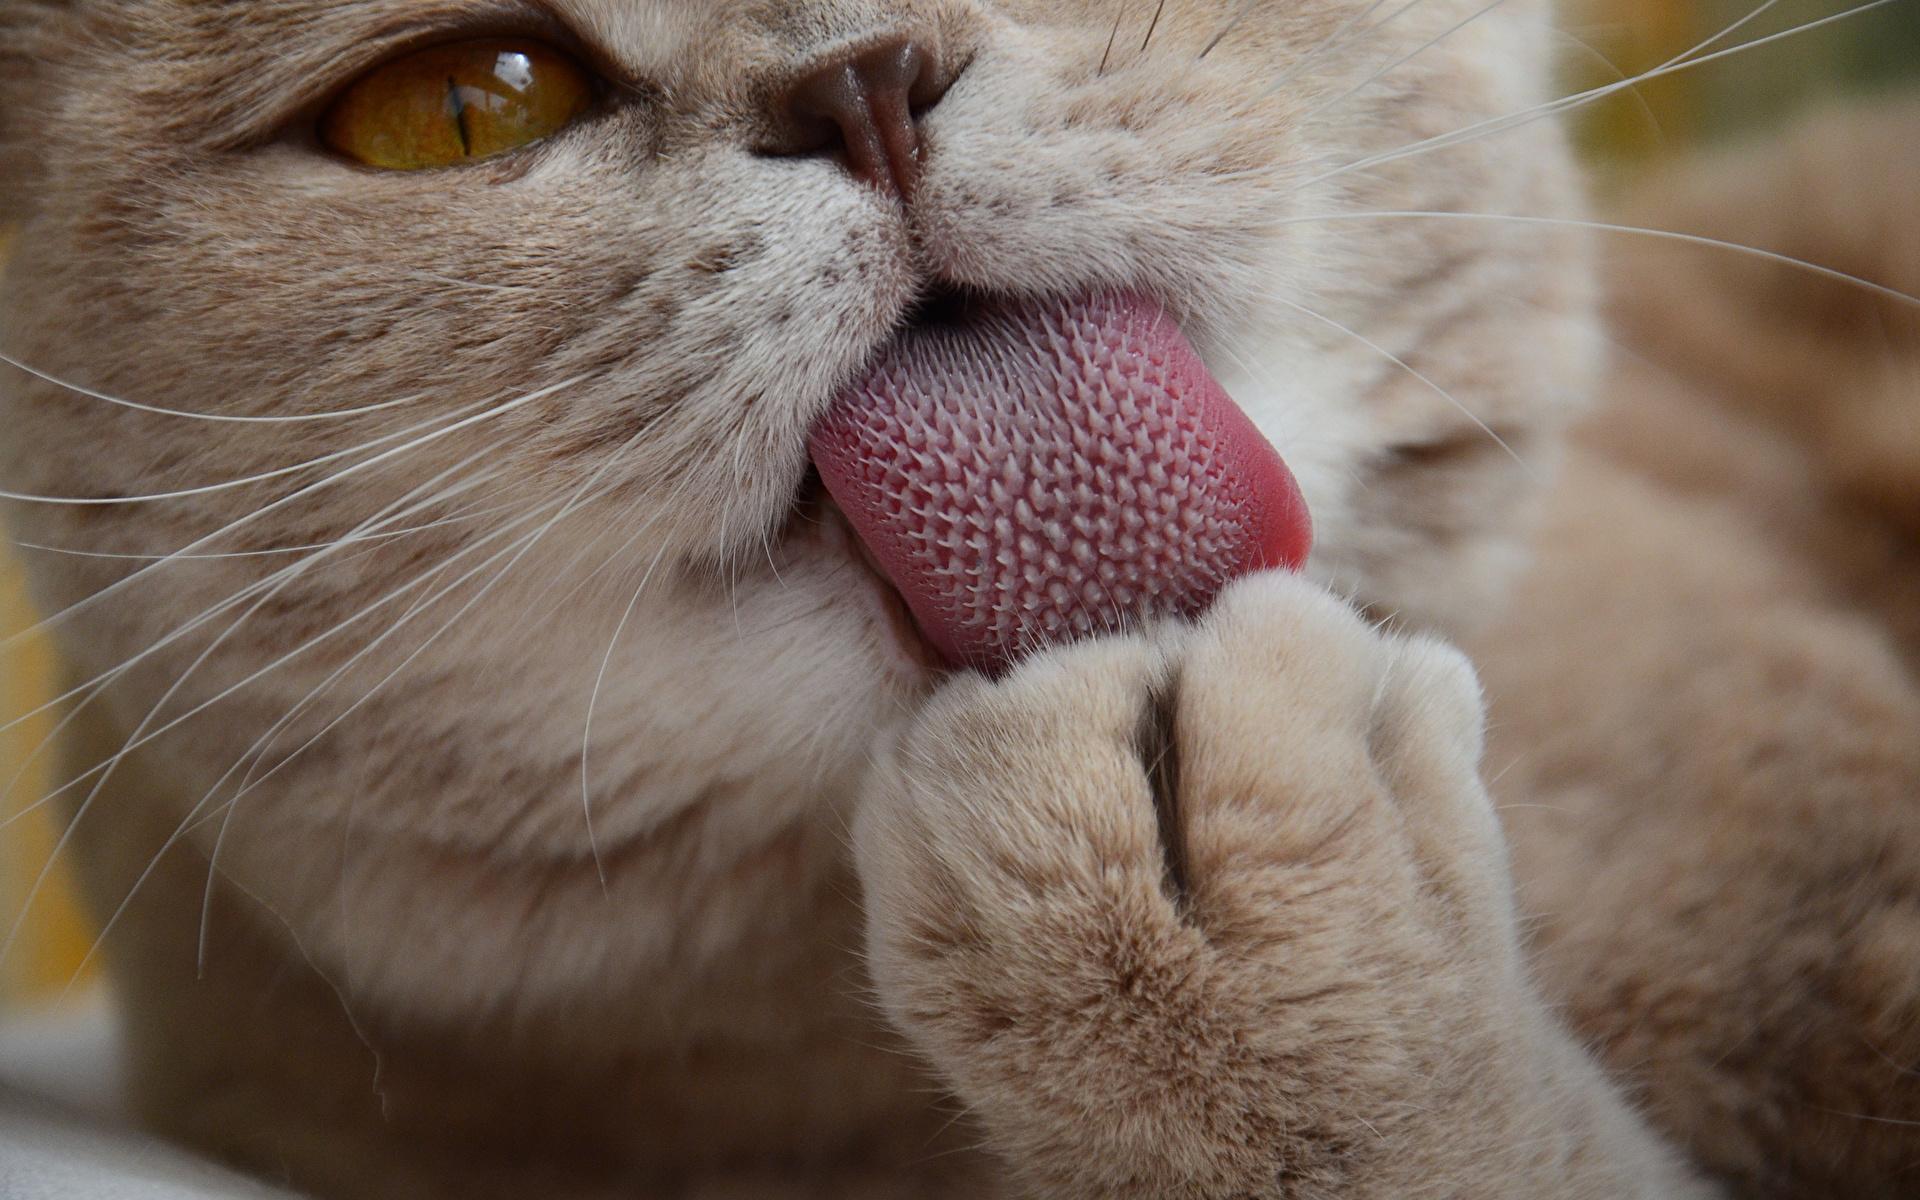 Полые сосочки на языке помогли кошкам тщательно умываться и не перегреваться